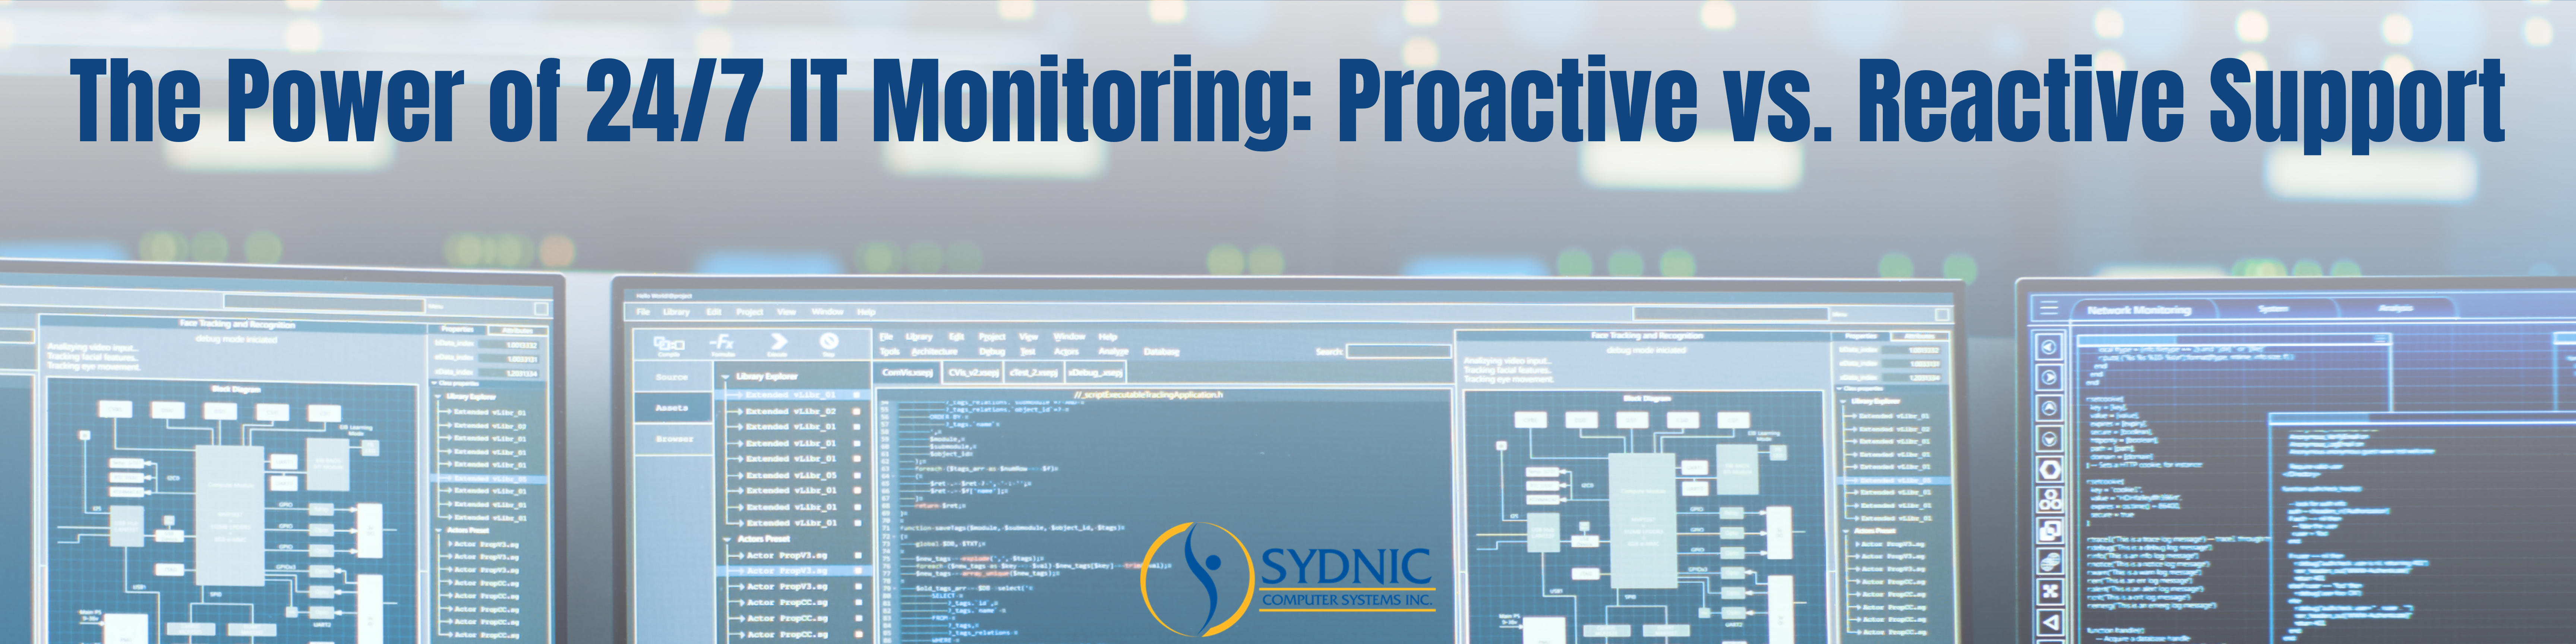 Proactive Monitoring